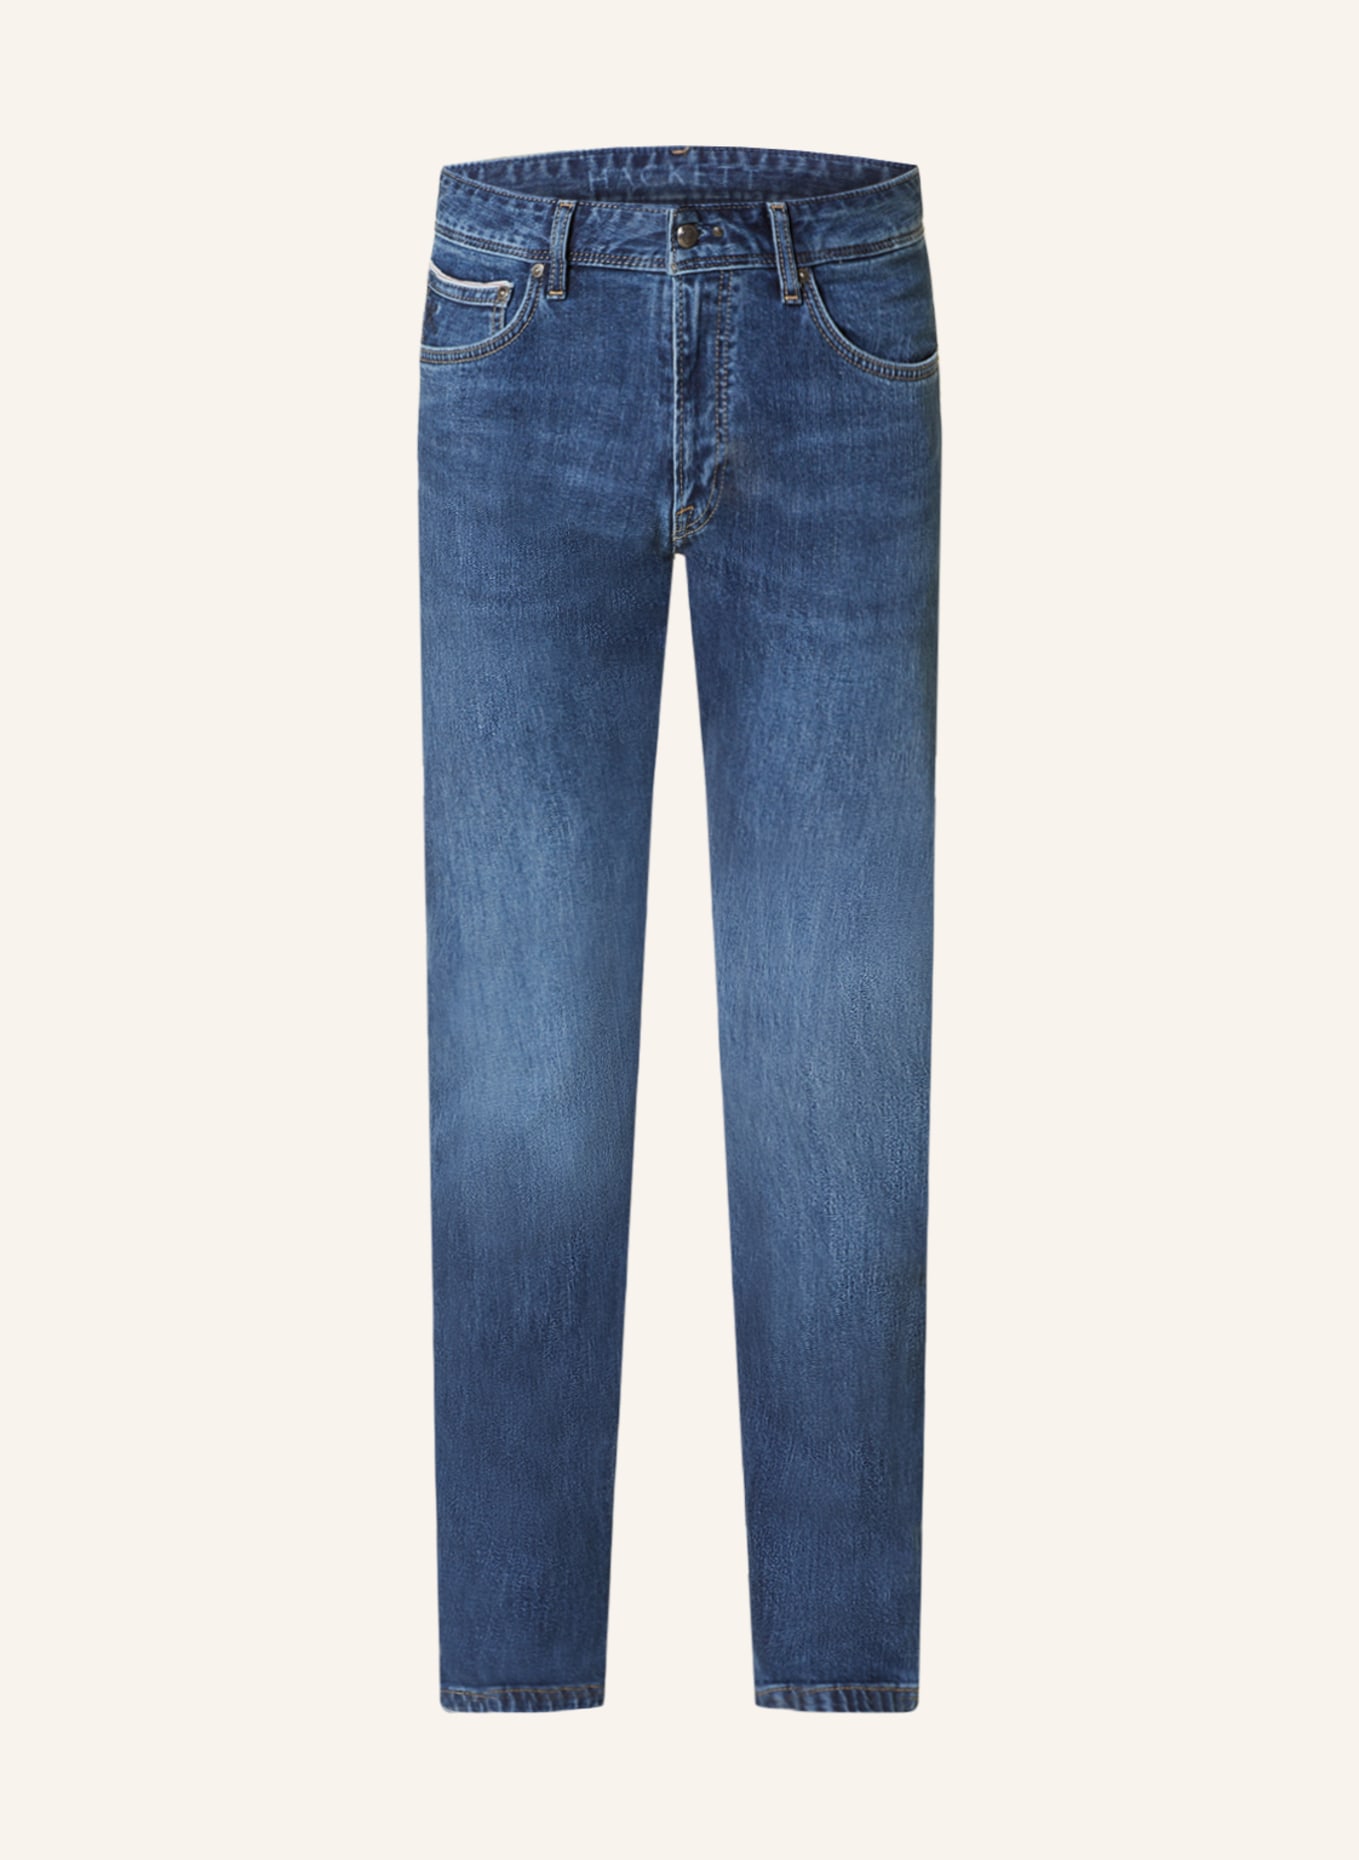 HACKETT LONDON Jeans Slim Fit, Farbe: 5FI LT DENI / L0'' (Bild 1)